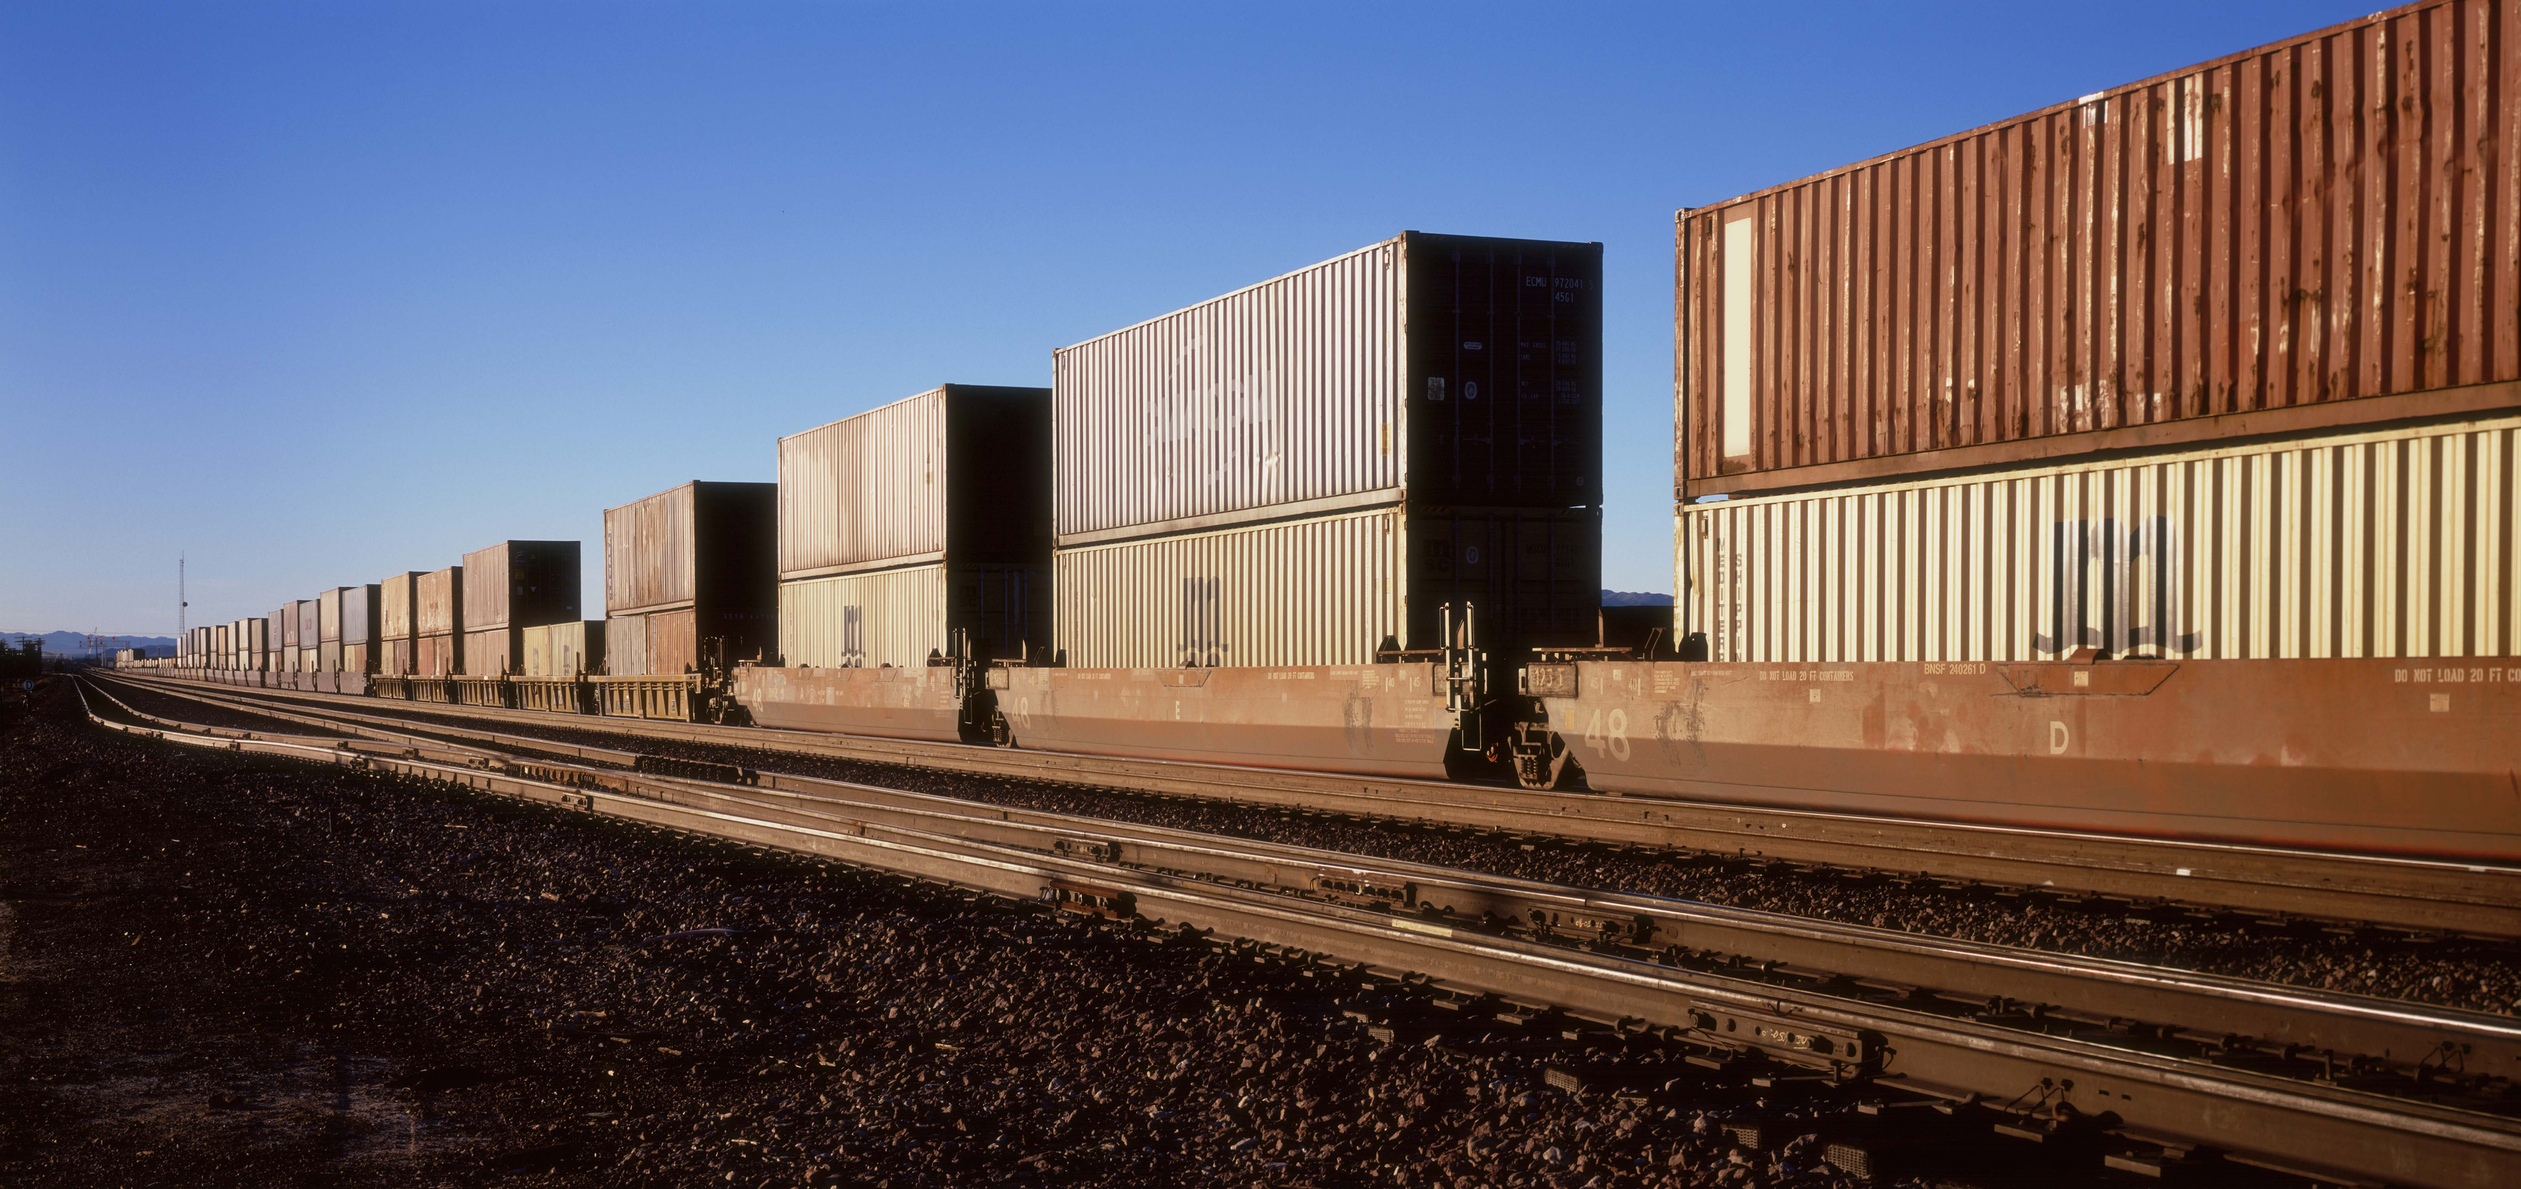 Railroads: A Derailed Supply Chain